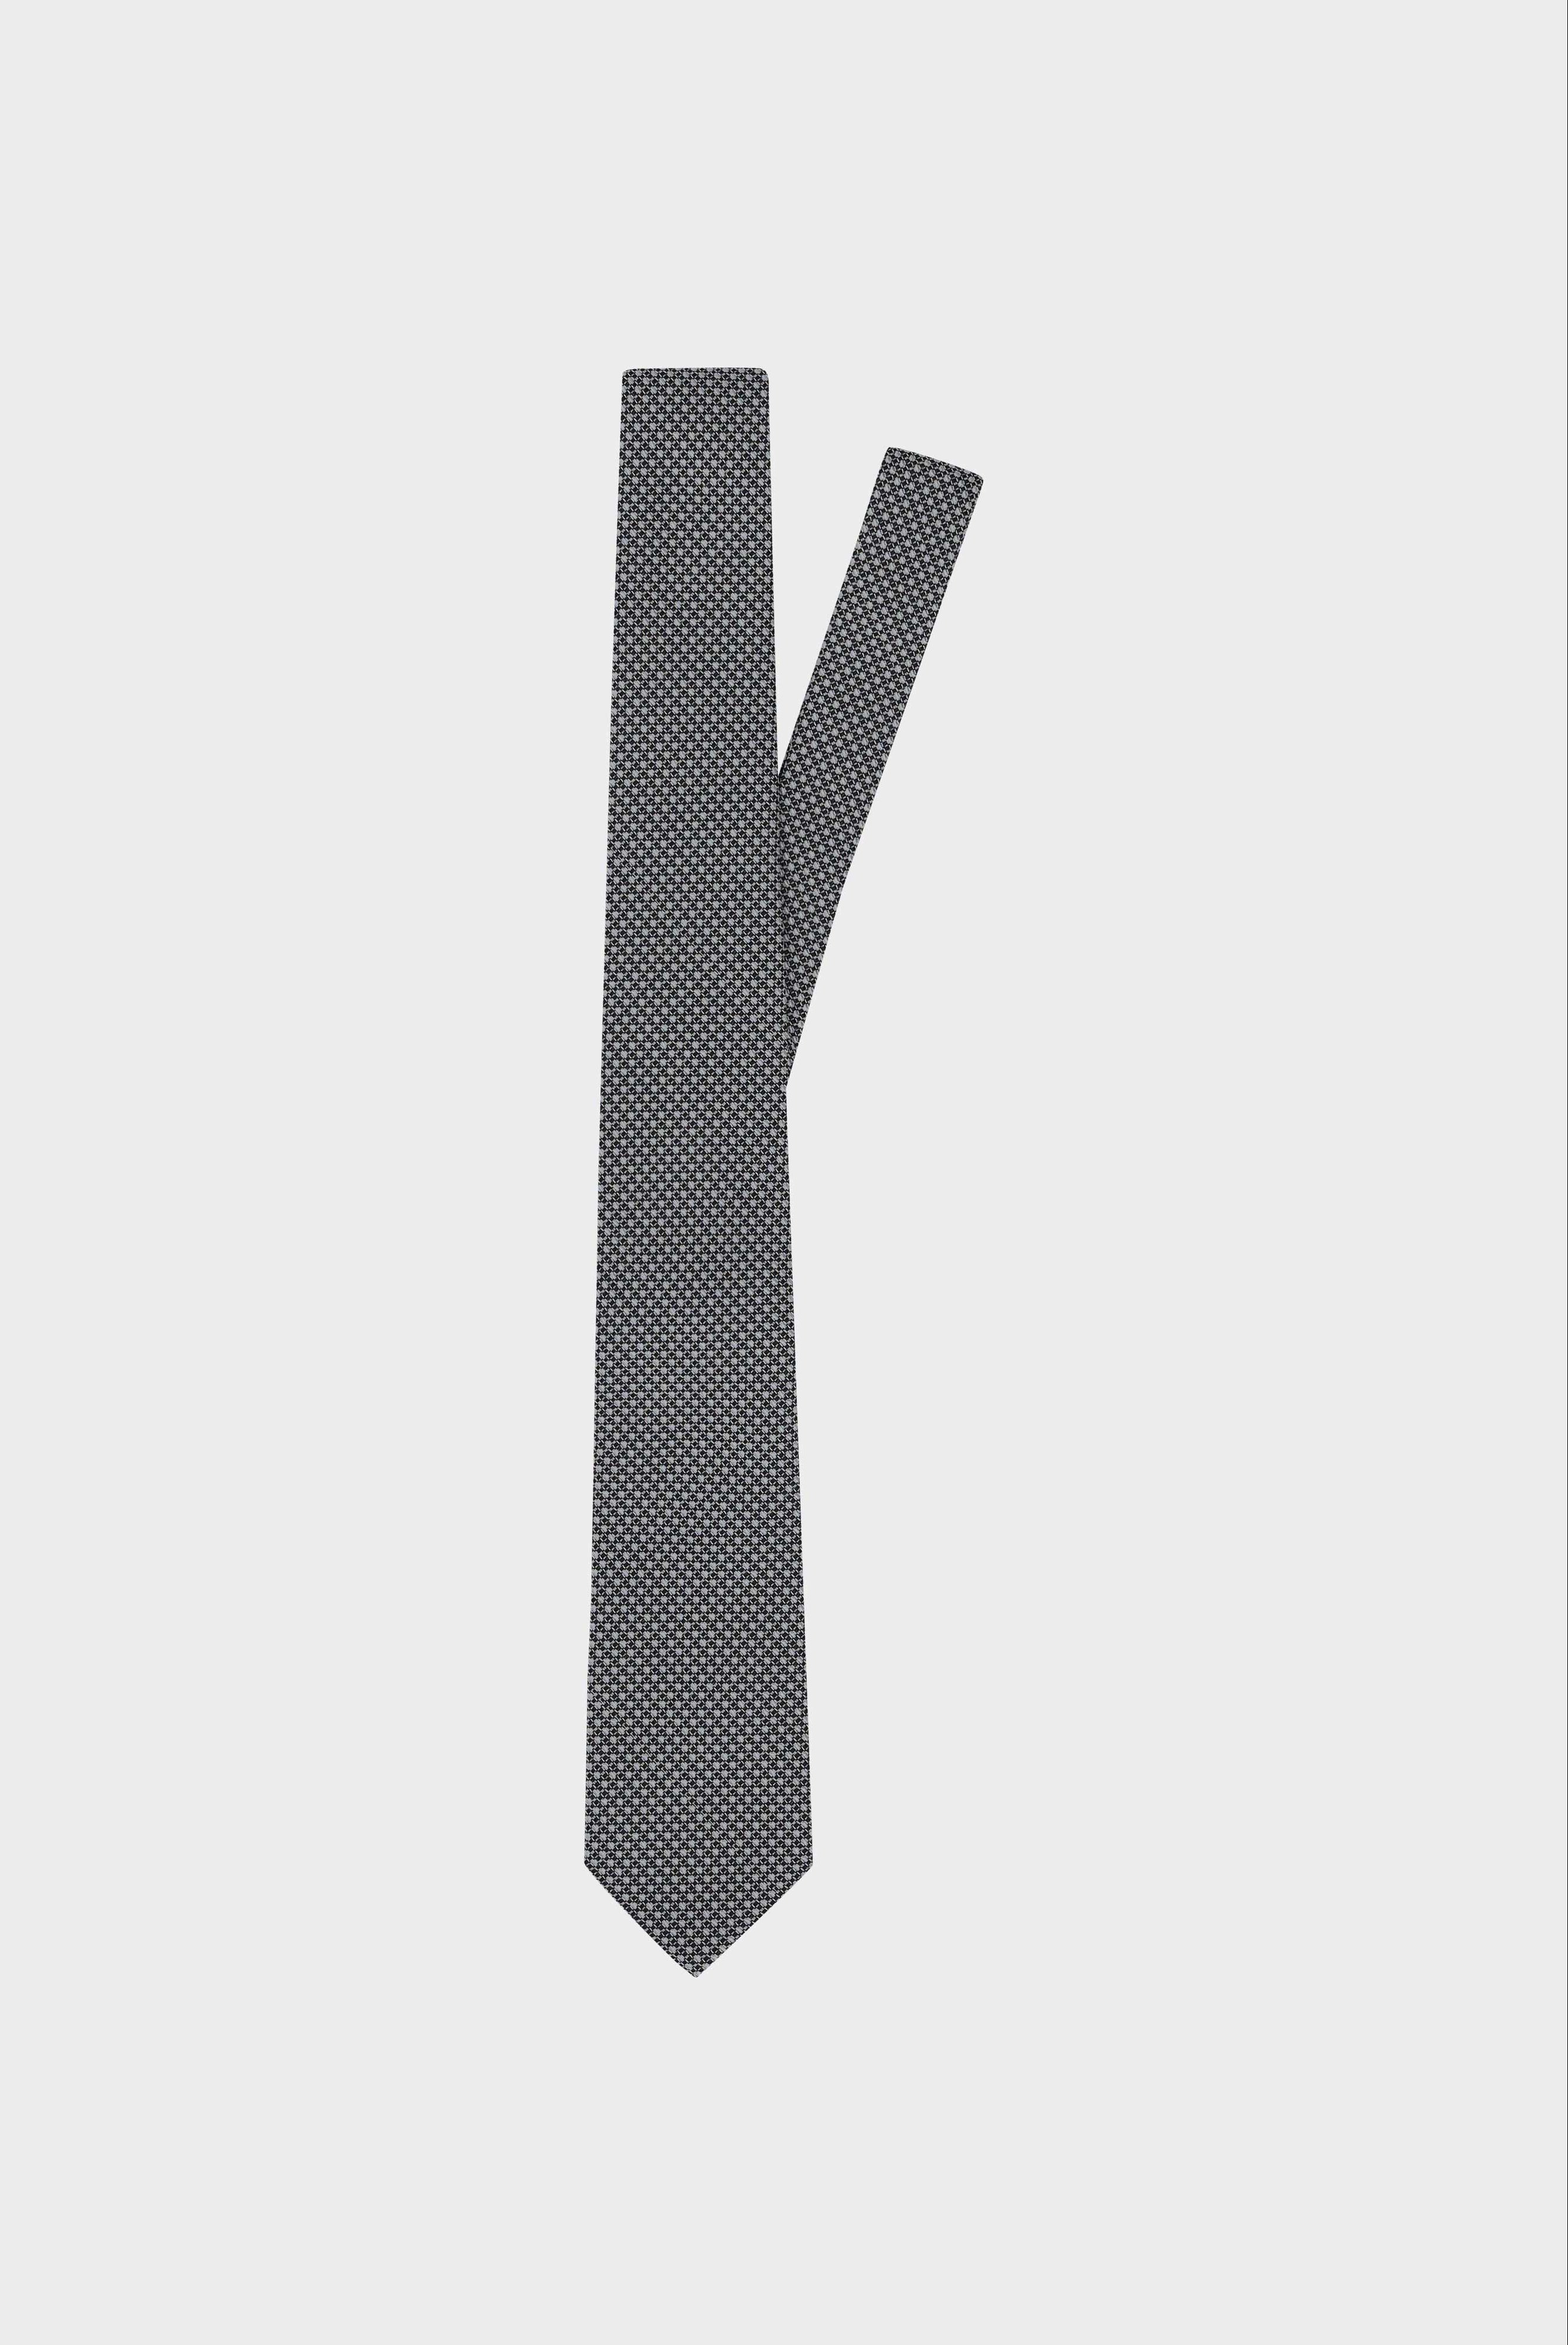 Seidenjacquard-Krawatte mit Struktur